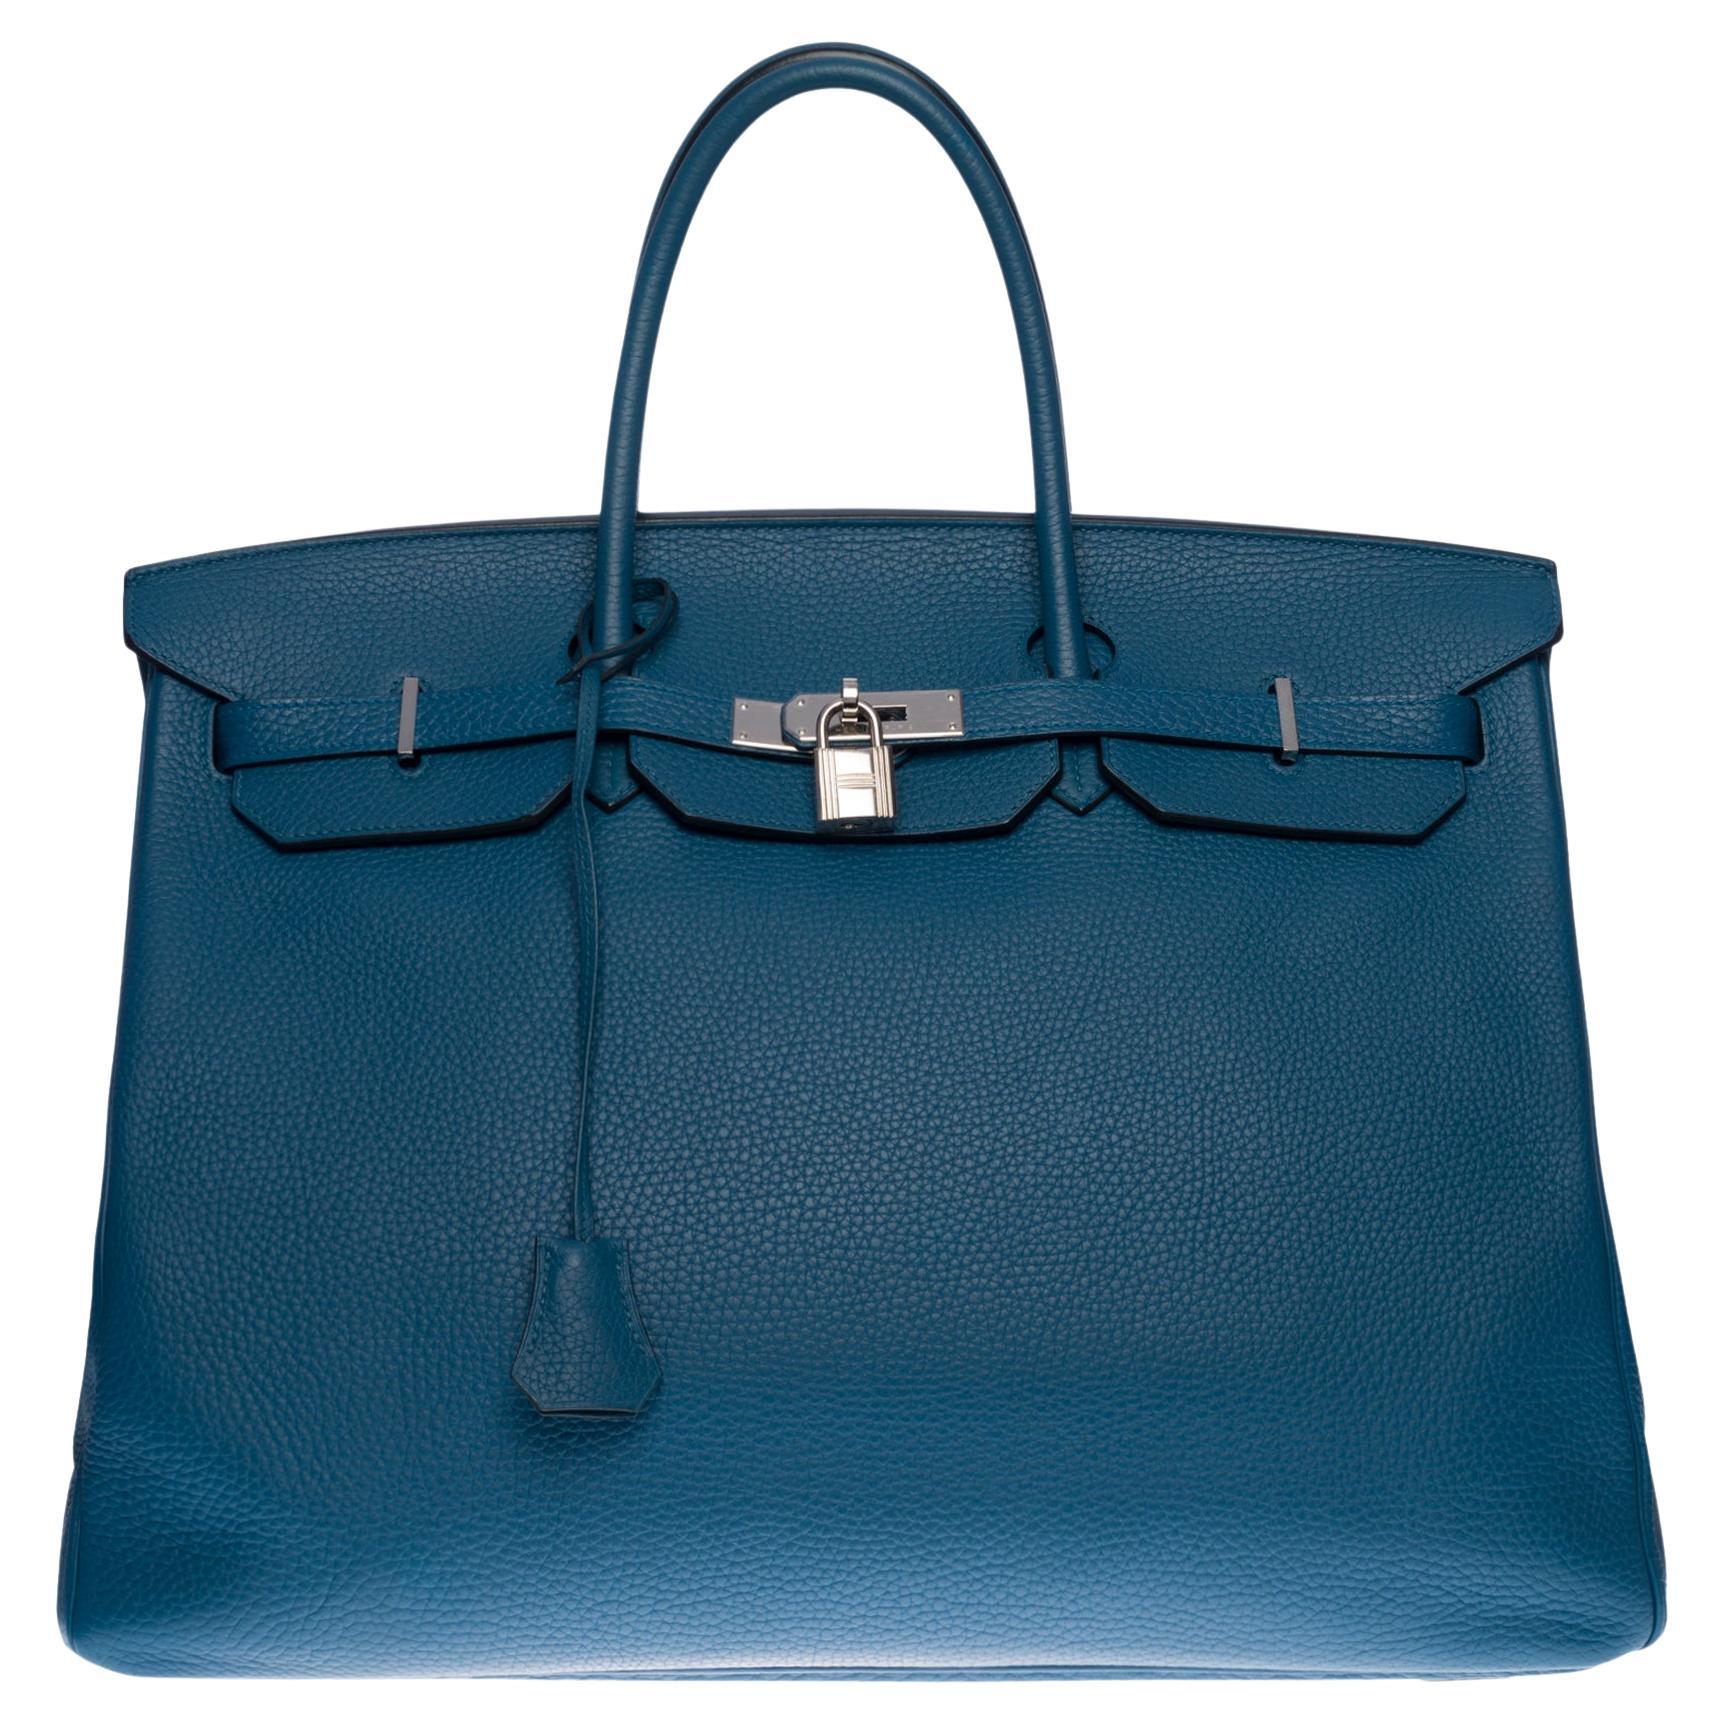 Stunning Hermes Birkin 40cm handbag in Blue Cobalt Togo leather, SHW